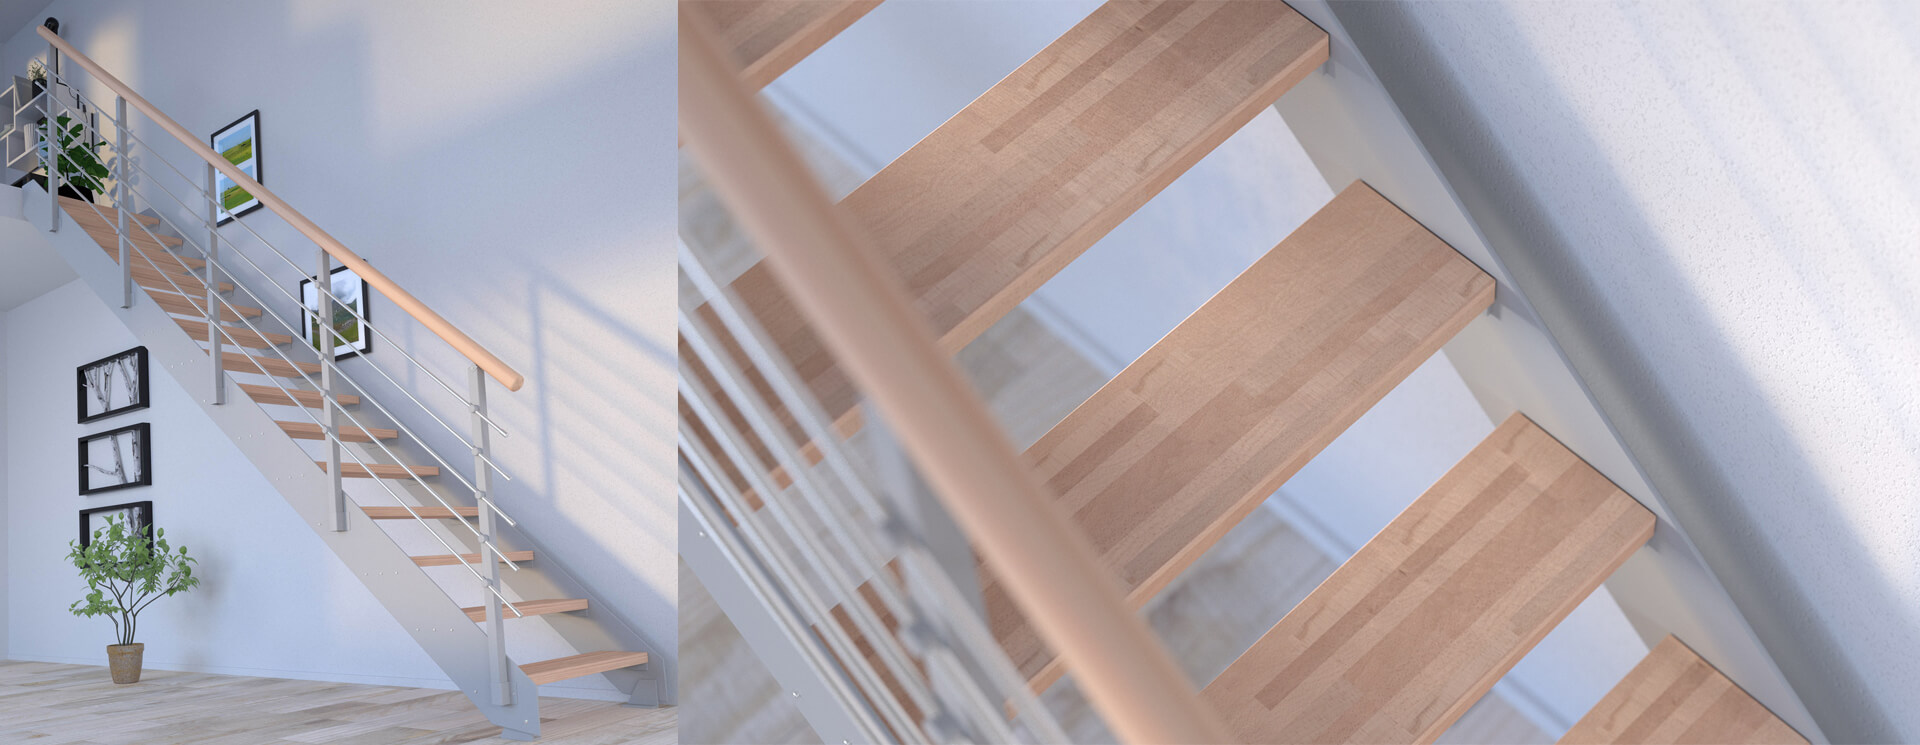 Metallwangentreppe, Treppe aus Metall und Holz, Designtreppe, Treppe aus Stahl